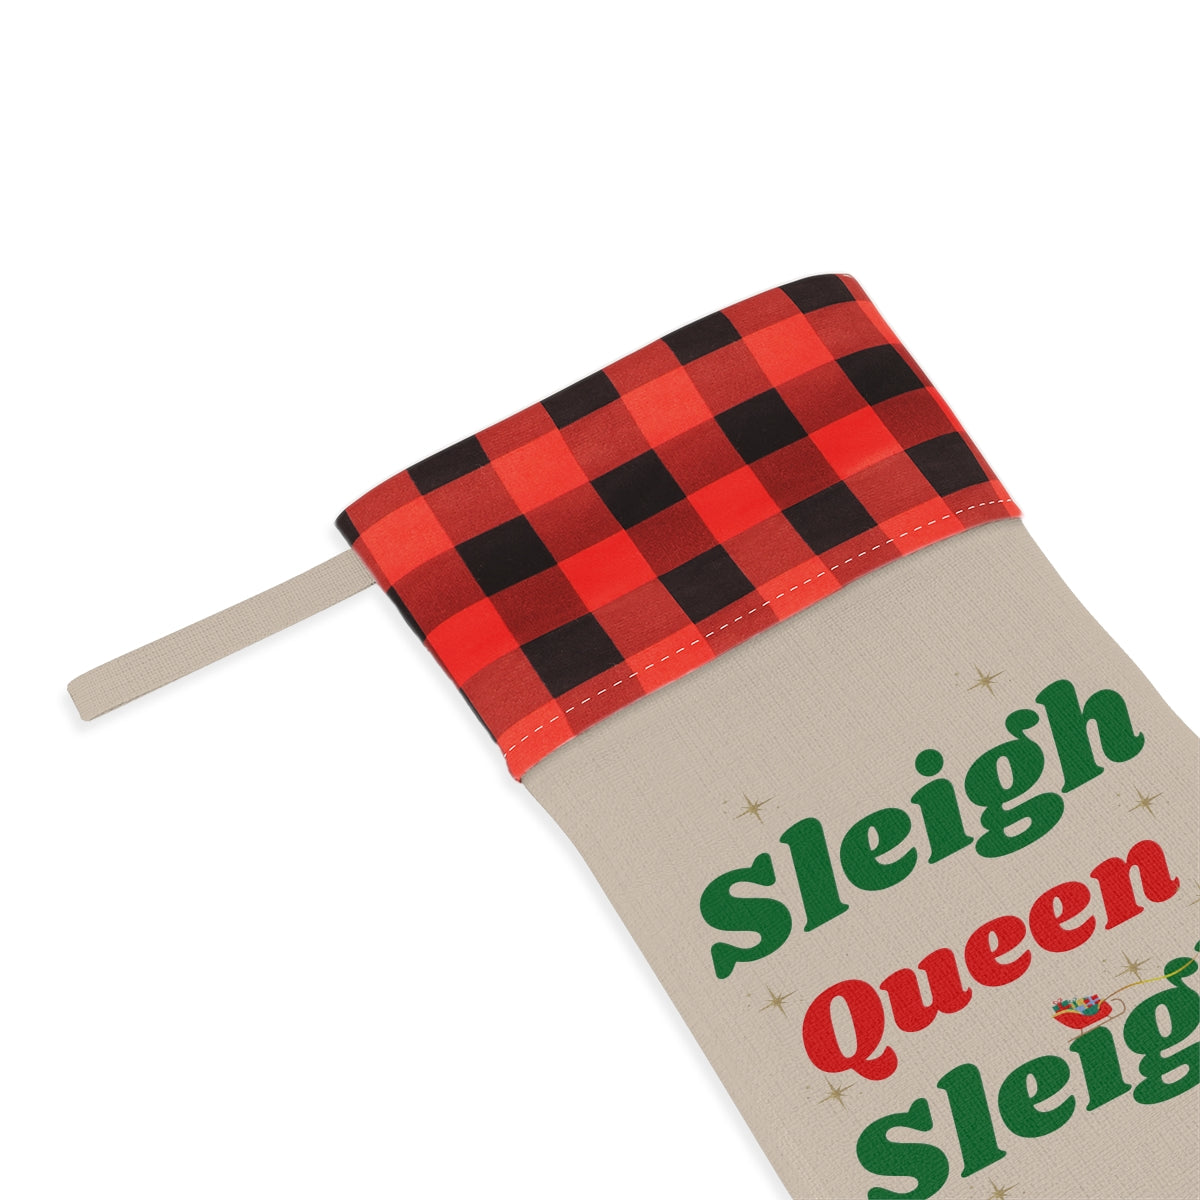 Sleigh Queen Sleigh Christmas Stocking